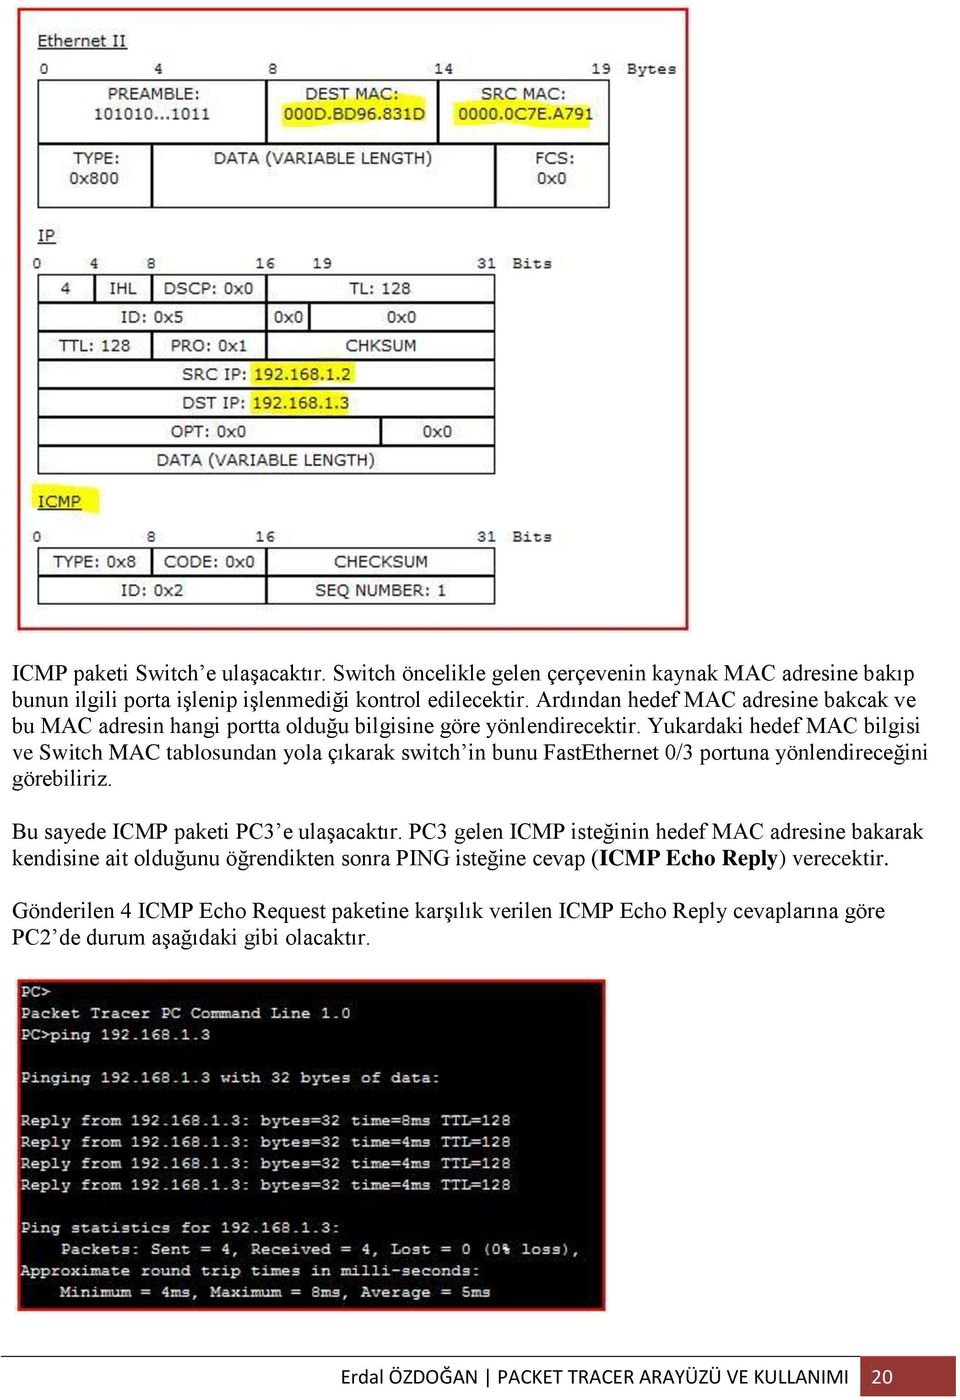 Yukardaki hedef MAC bilgisi ve Switch MAC tablosundan yola çıkarak switch in bunu FastEthernet 0/3 portuna yönlendireceğini görebiliriz. Bu sayede ICMP paketi PC3 e ulaşacaktır.